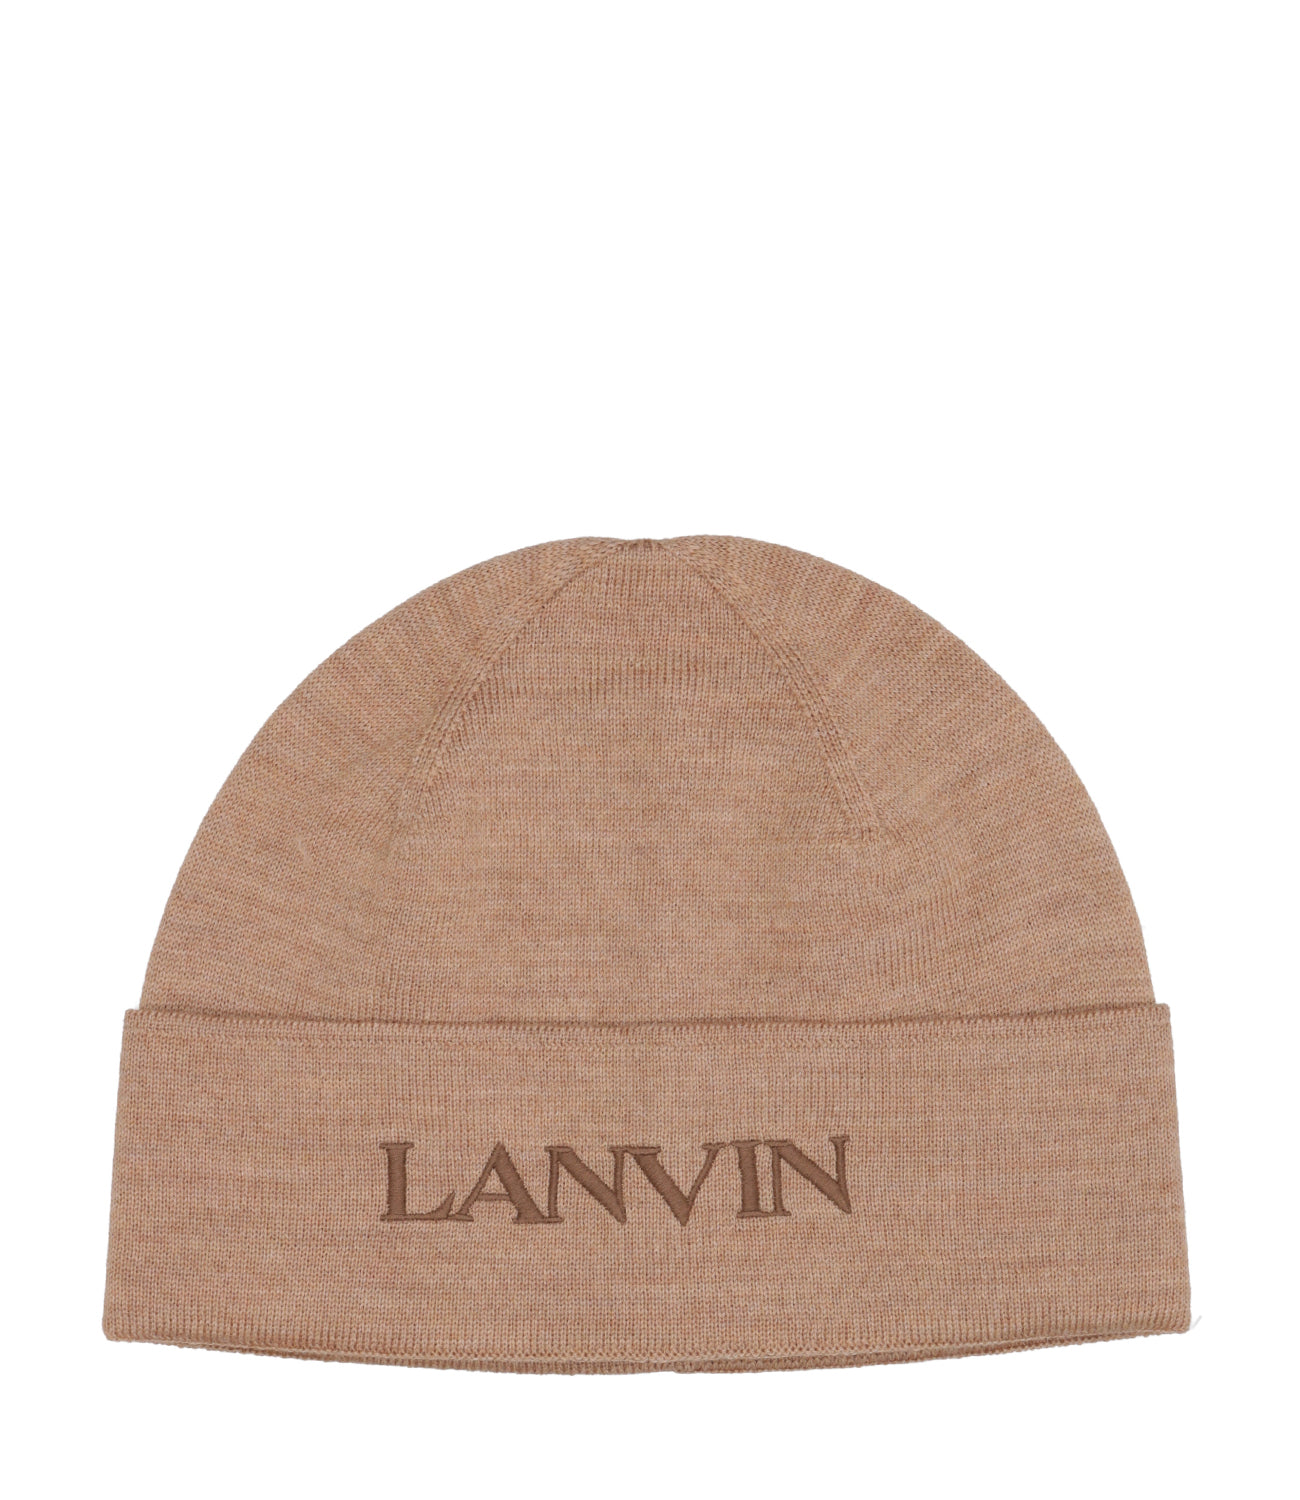 Lanvin | Cappello Beige